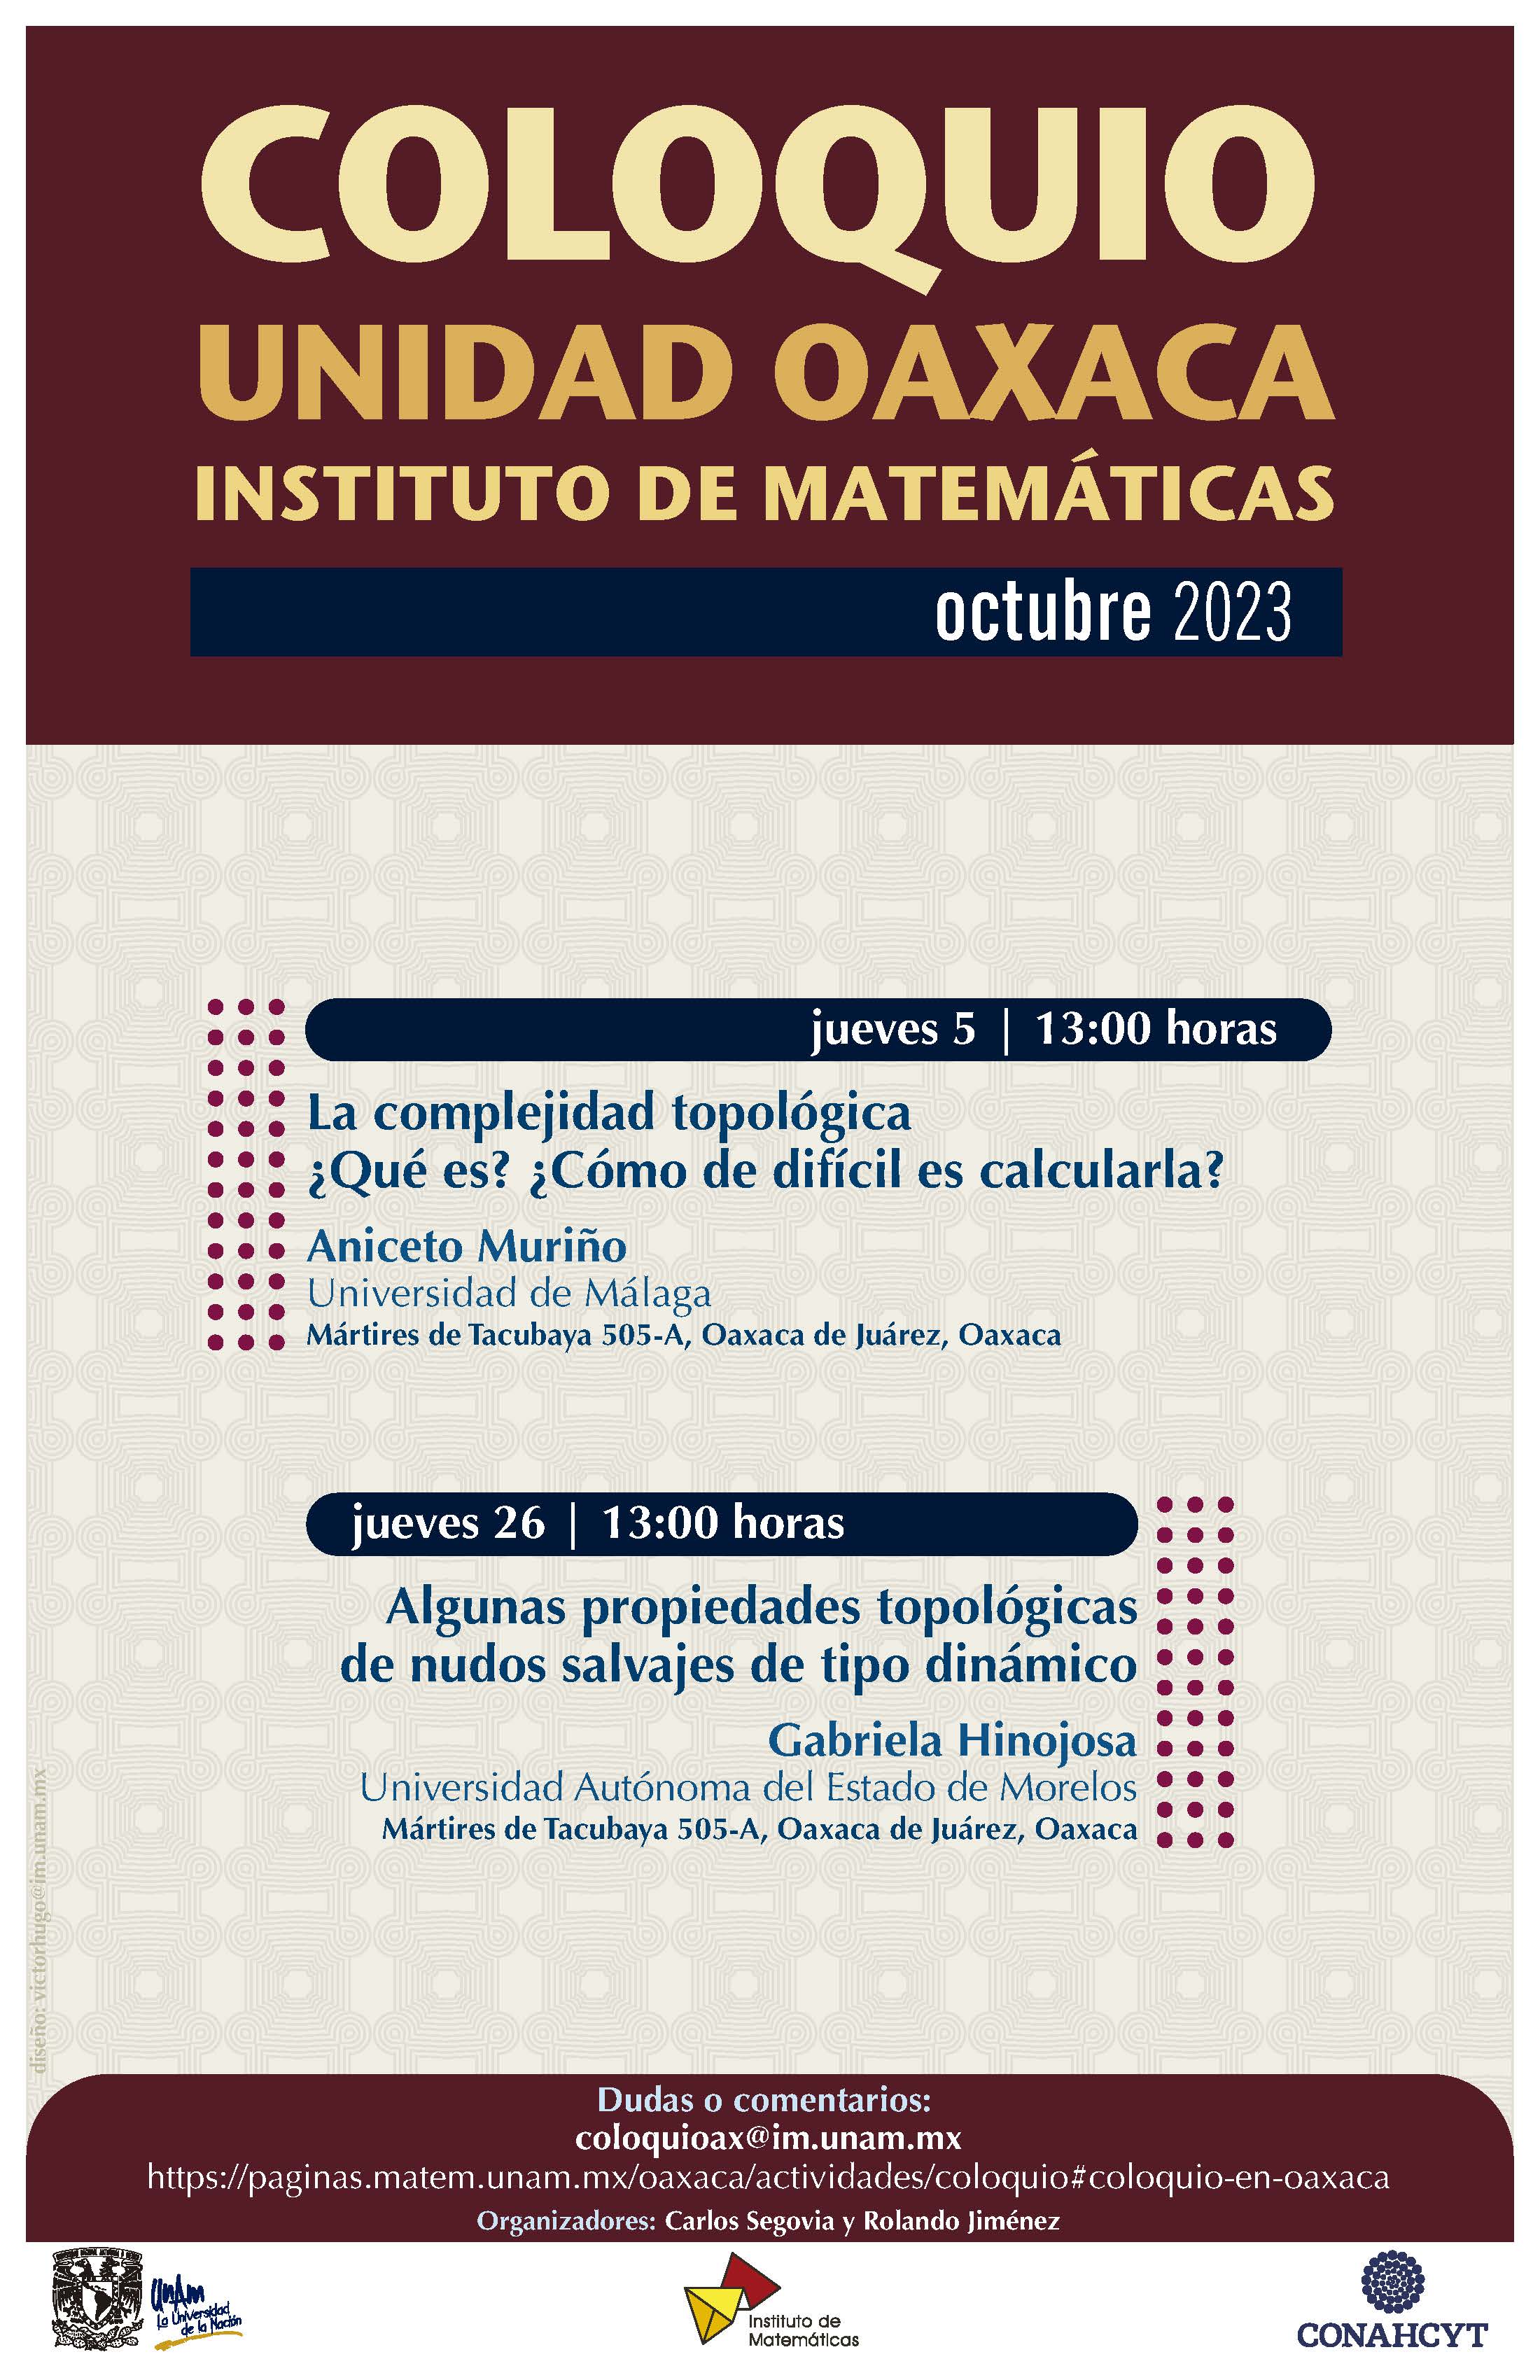 Coloquio de la Unidad Oaxaca del Instituto Matemáticas, octubre 2023